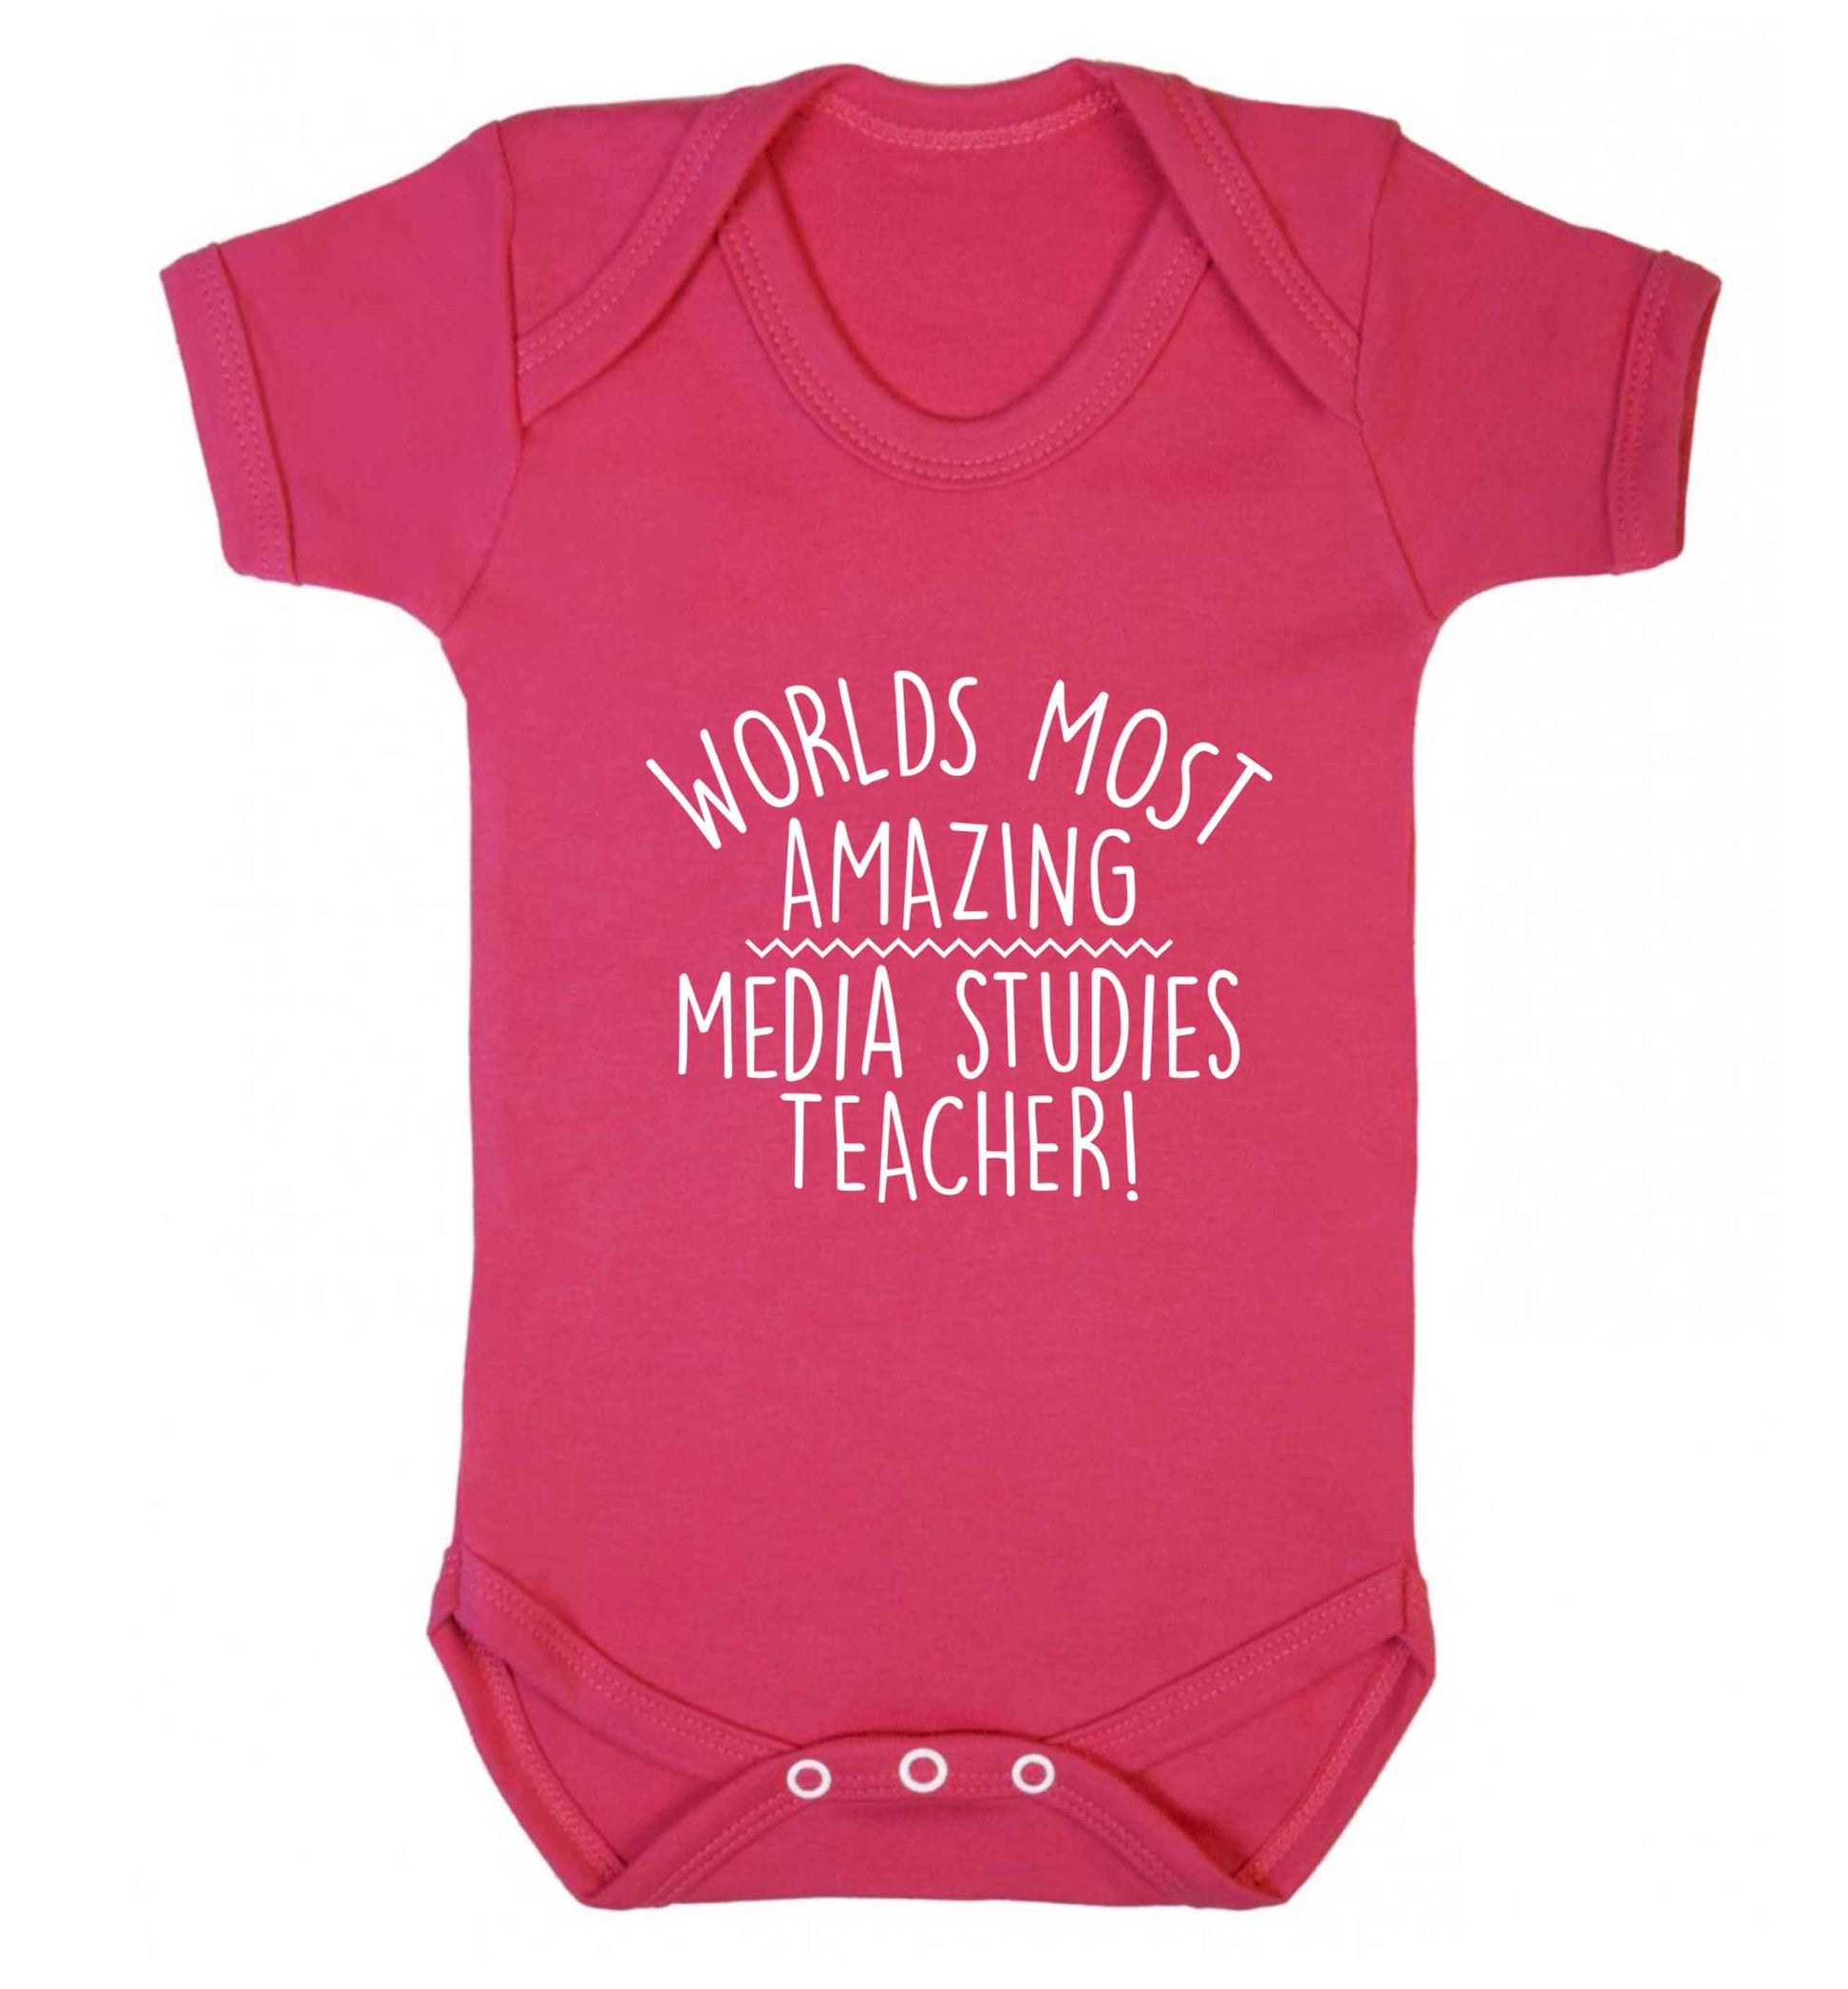 Worlds most amazing media studies teacher baby vest dark pink 18-24 months